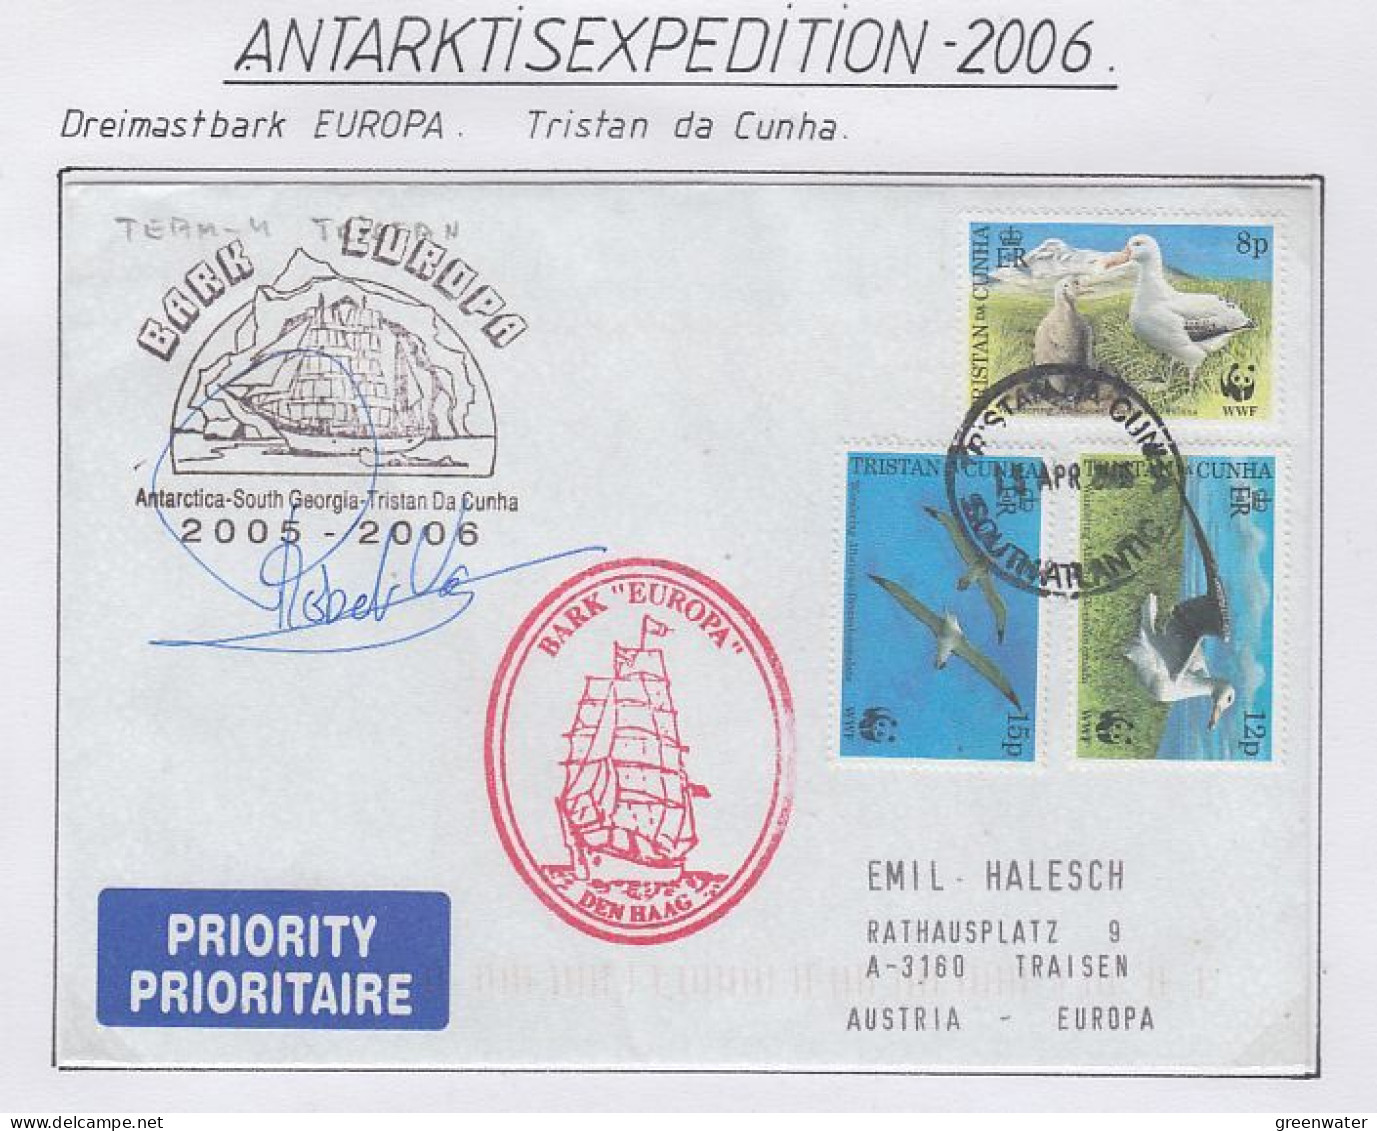 Tristan Da Cunha  Ship Visit Bark Europa  To Tristan De Cunha  Signature Ca 15 APR 2006 (59891) - Polar Ships & Icebreakers